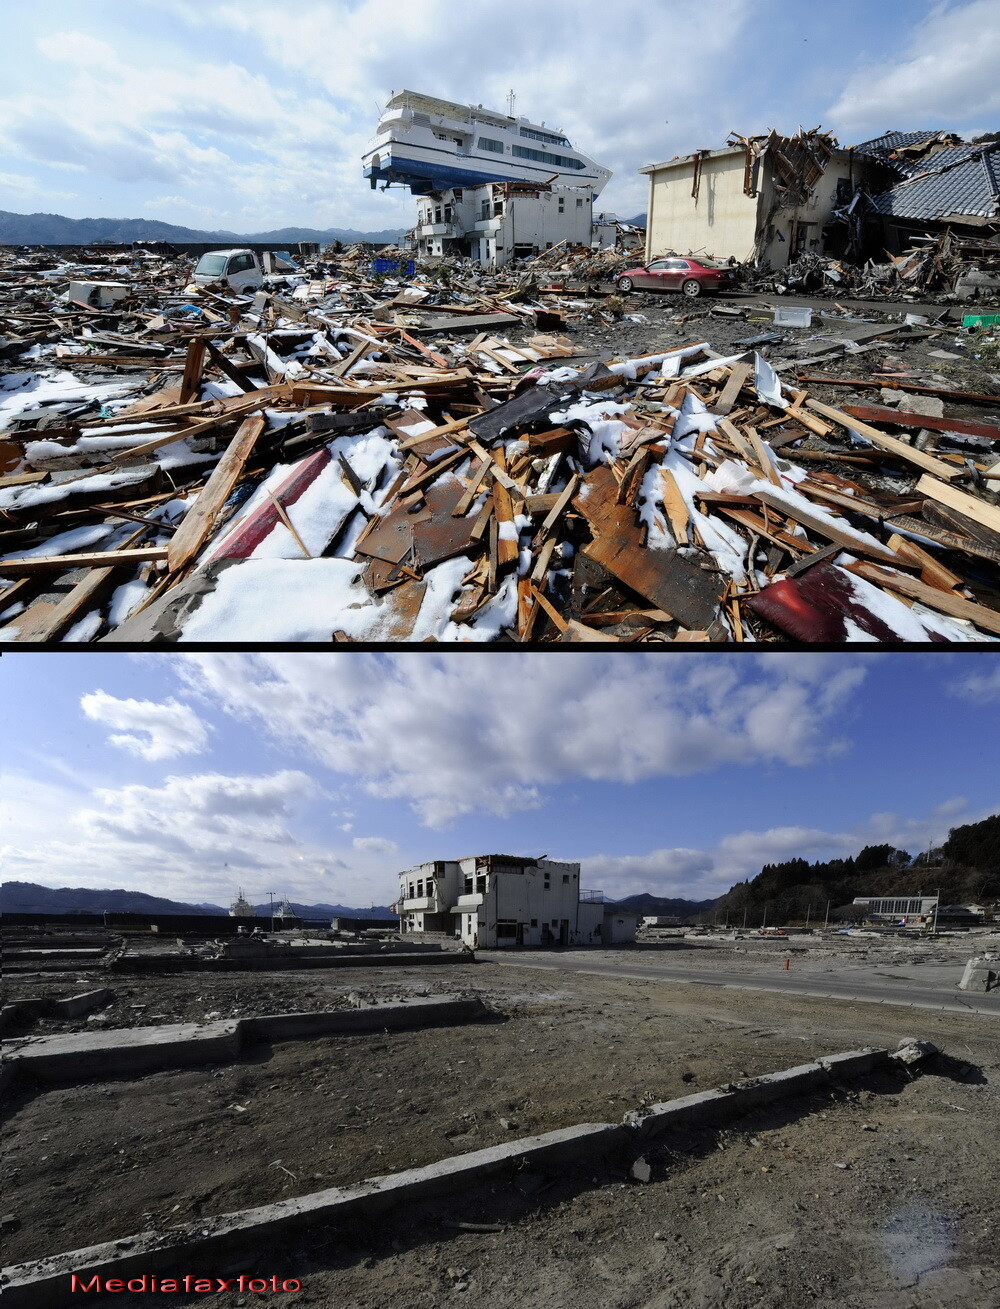 Barca de pe casa, imaginea simbol a Japoniei dupa tsunami. Cum arata acest loc astazi - Imaginea 8